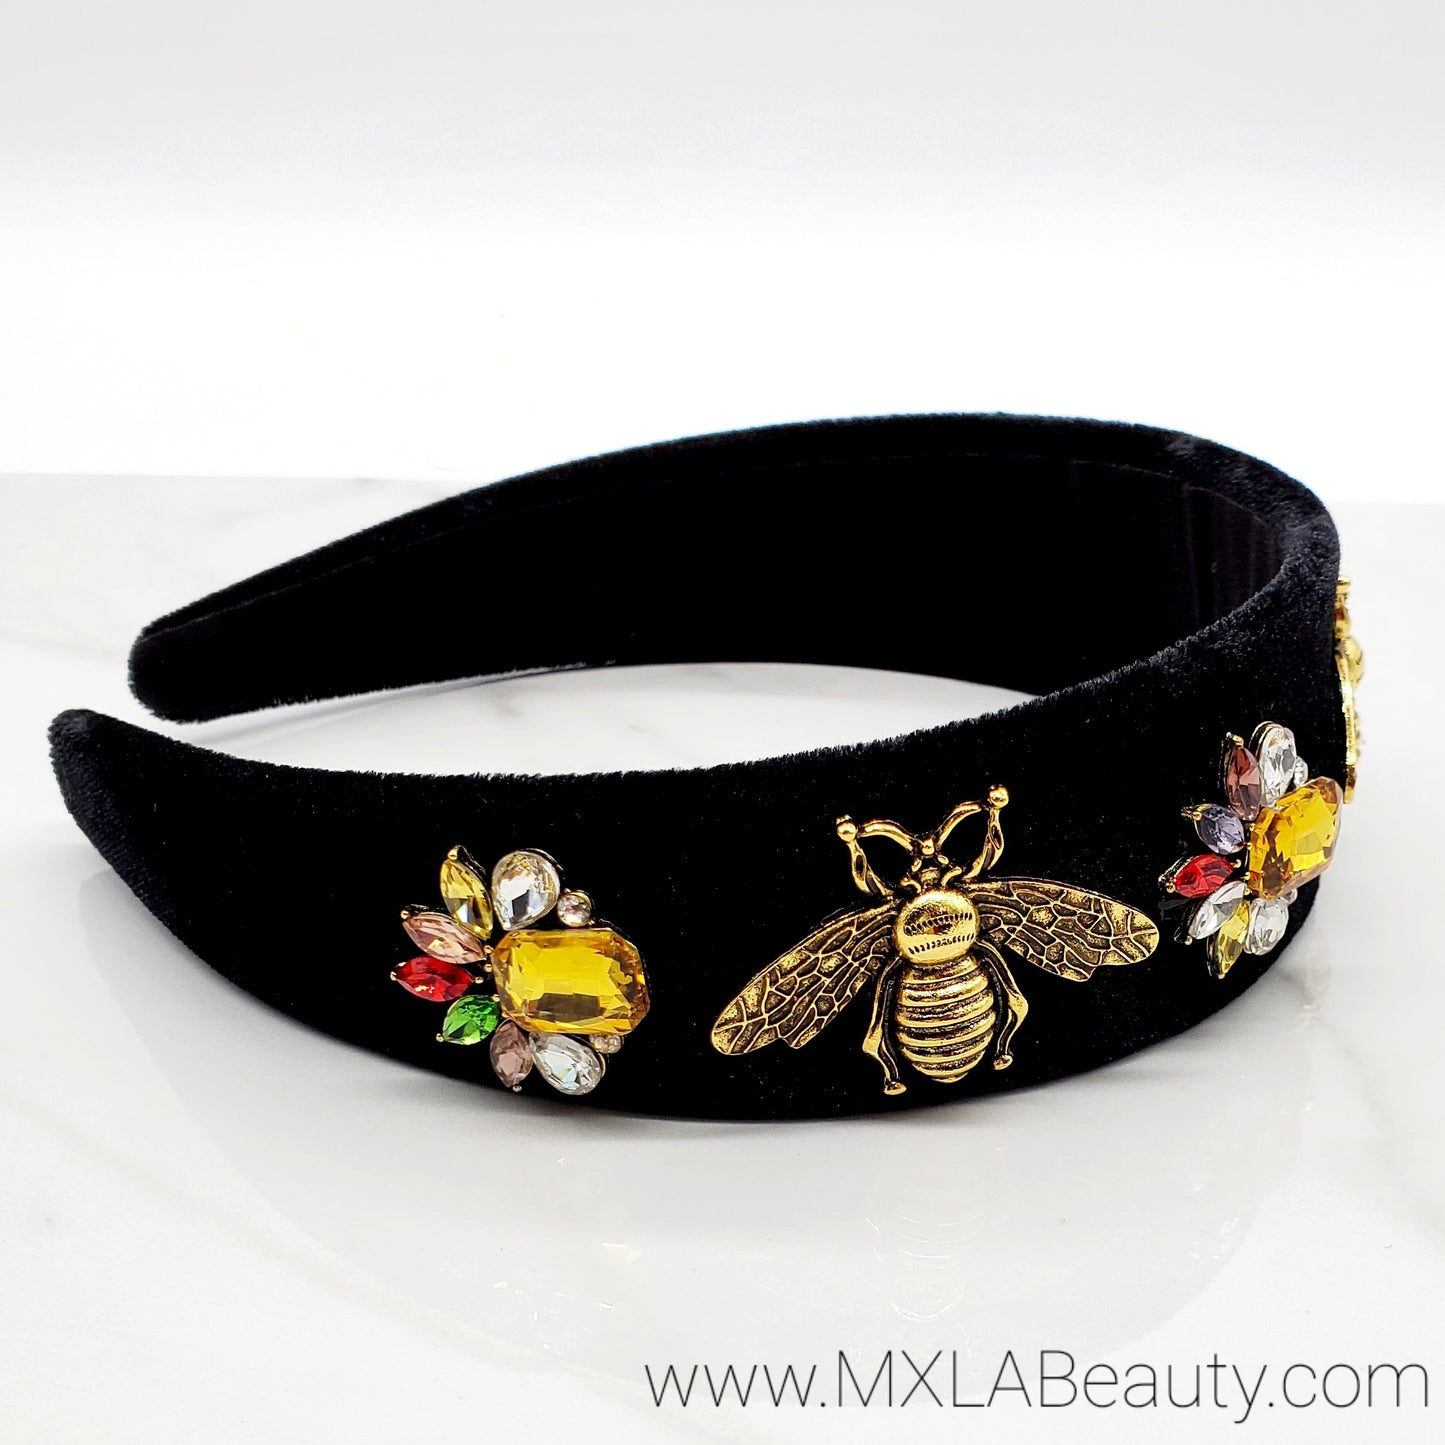 Queen Bee 2.0 Headband